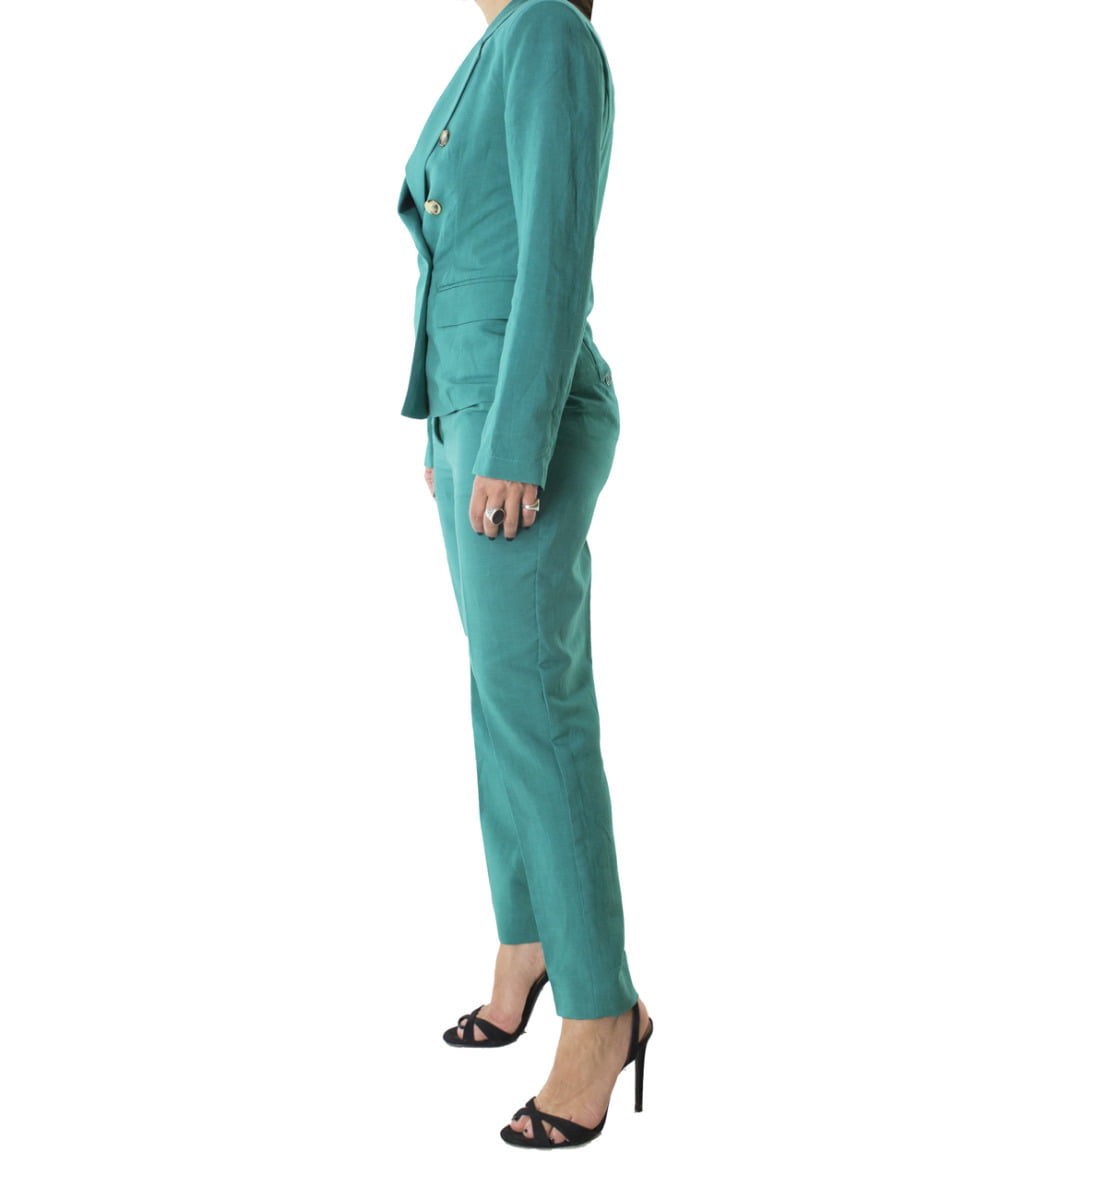 Giacca donna blazer corto sfoderato in lino modello doppiopetto bottone tartarugato e spalline